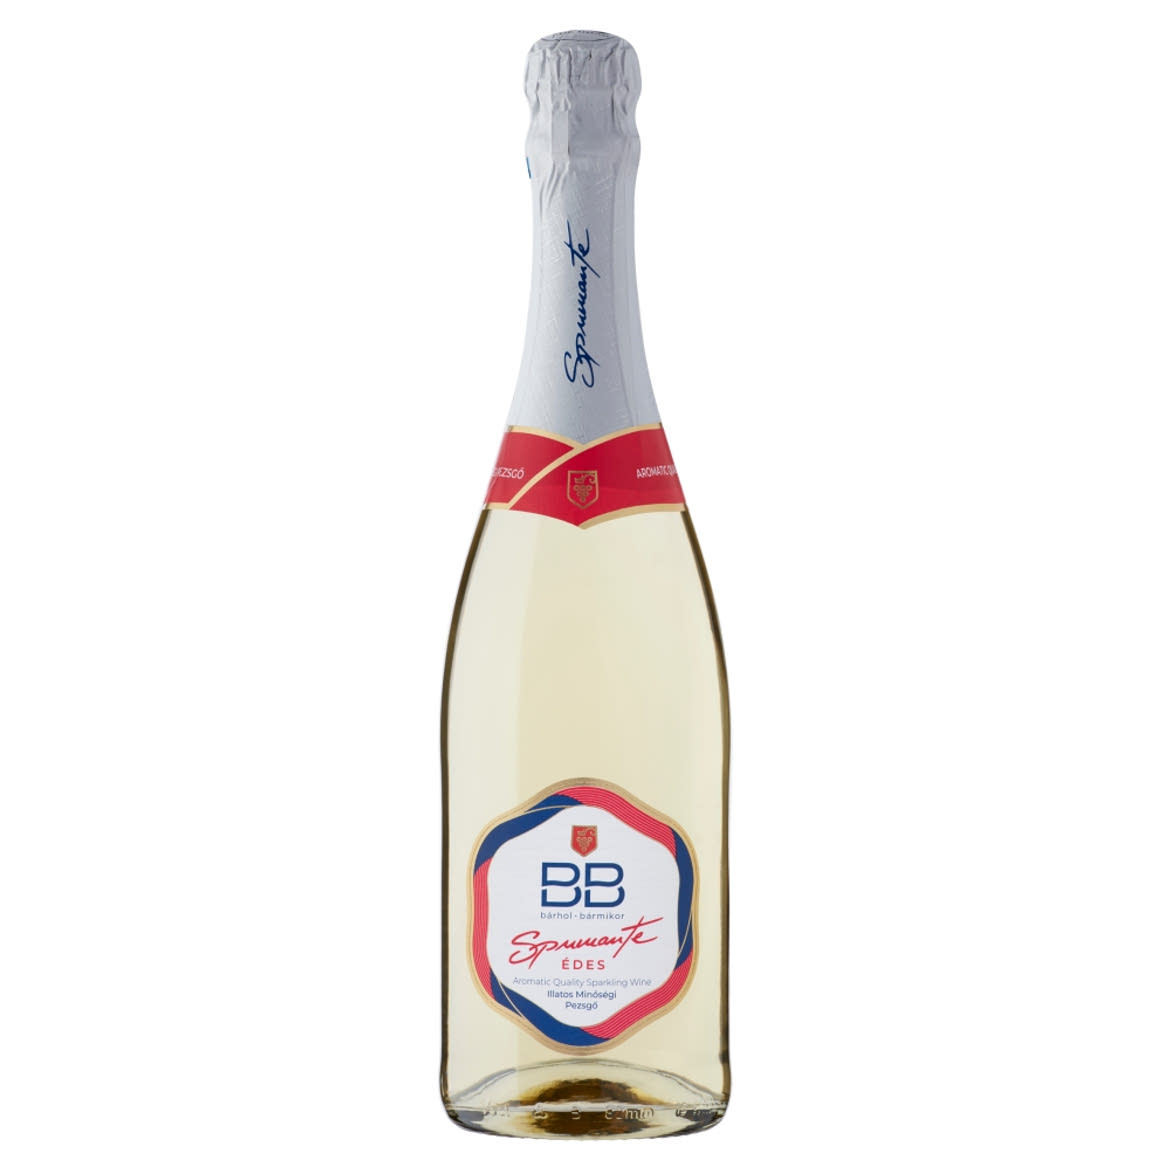 BB Spumante édes illatos minőségi pezsgő